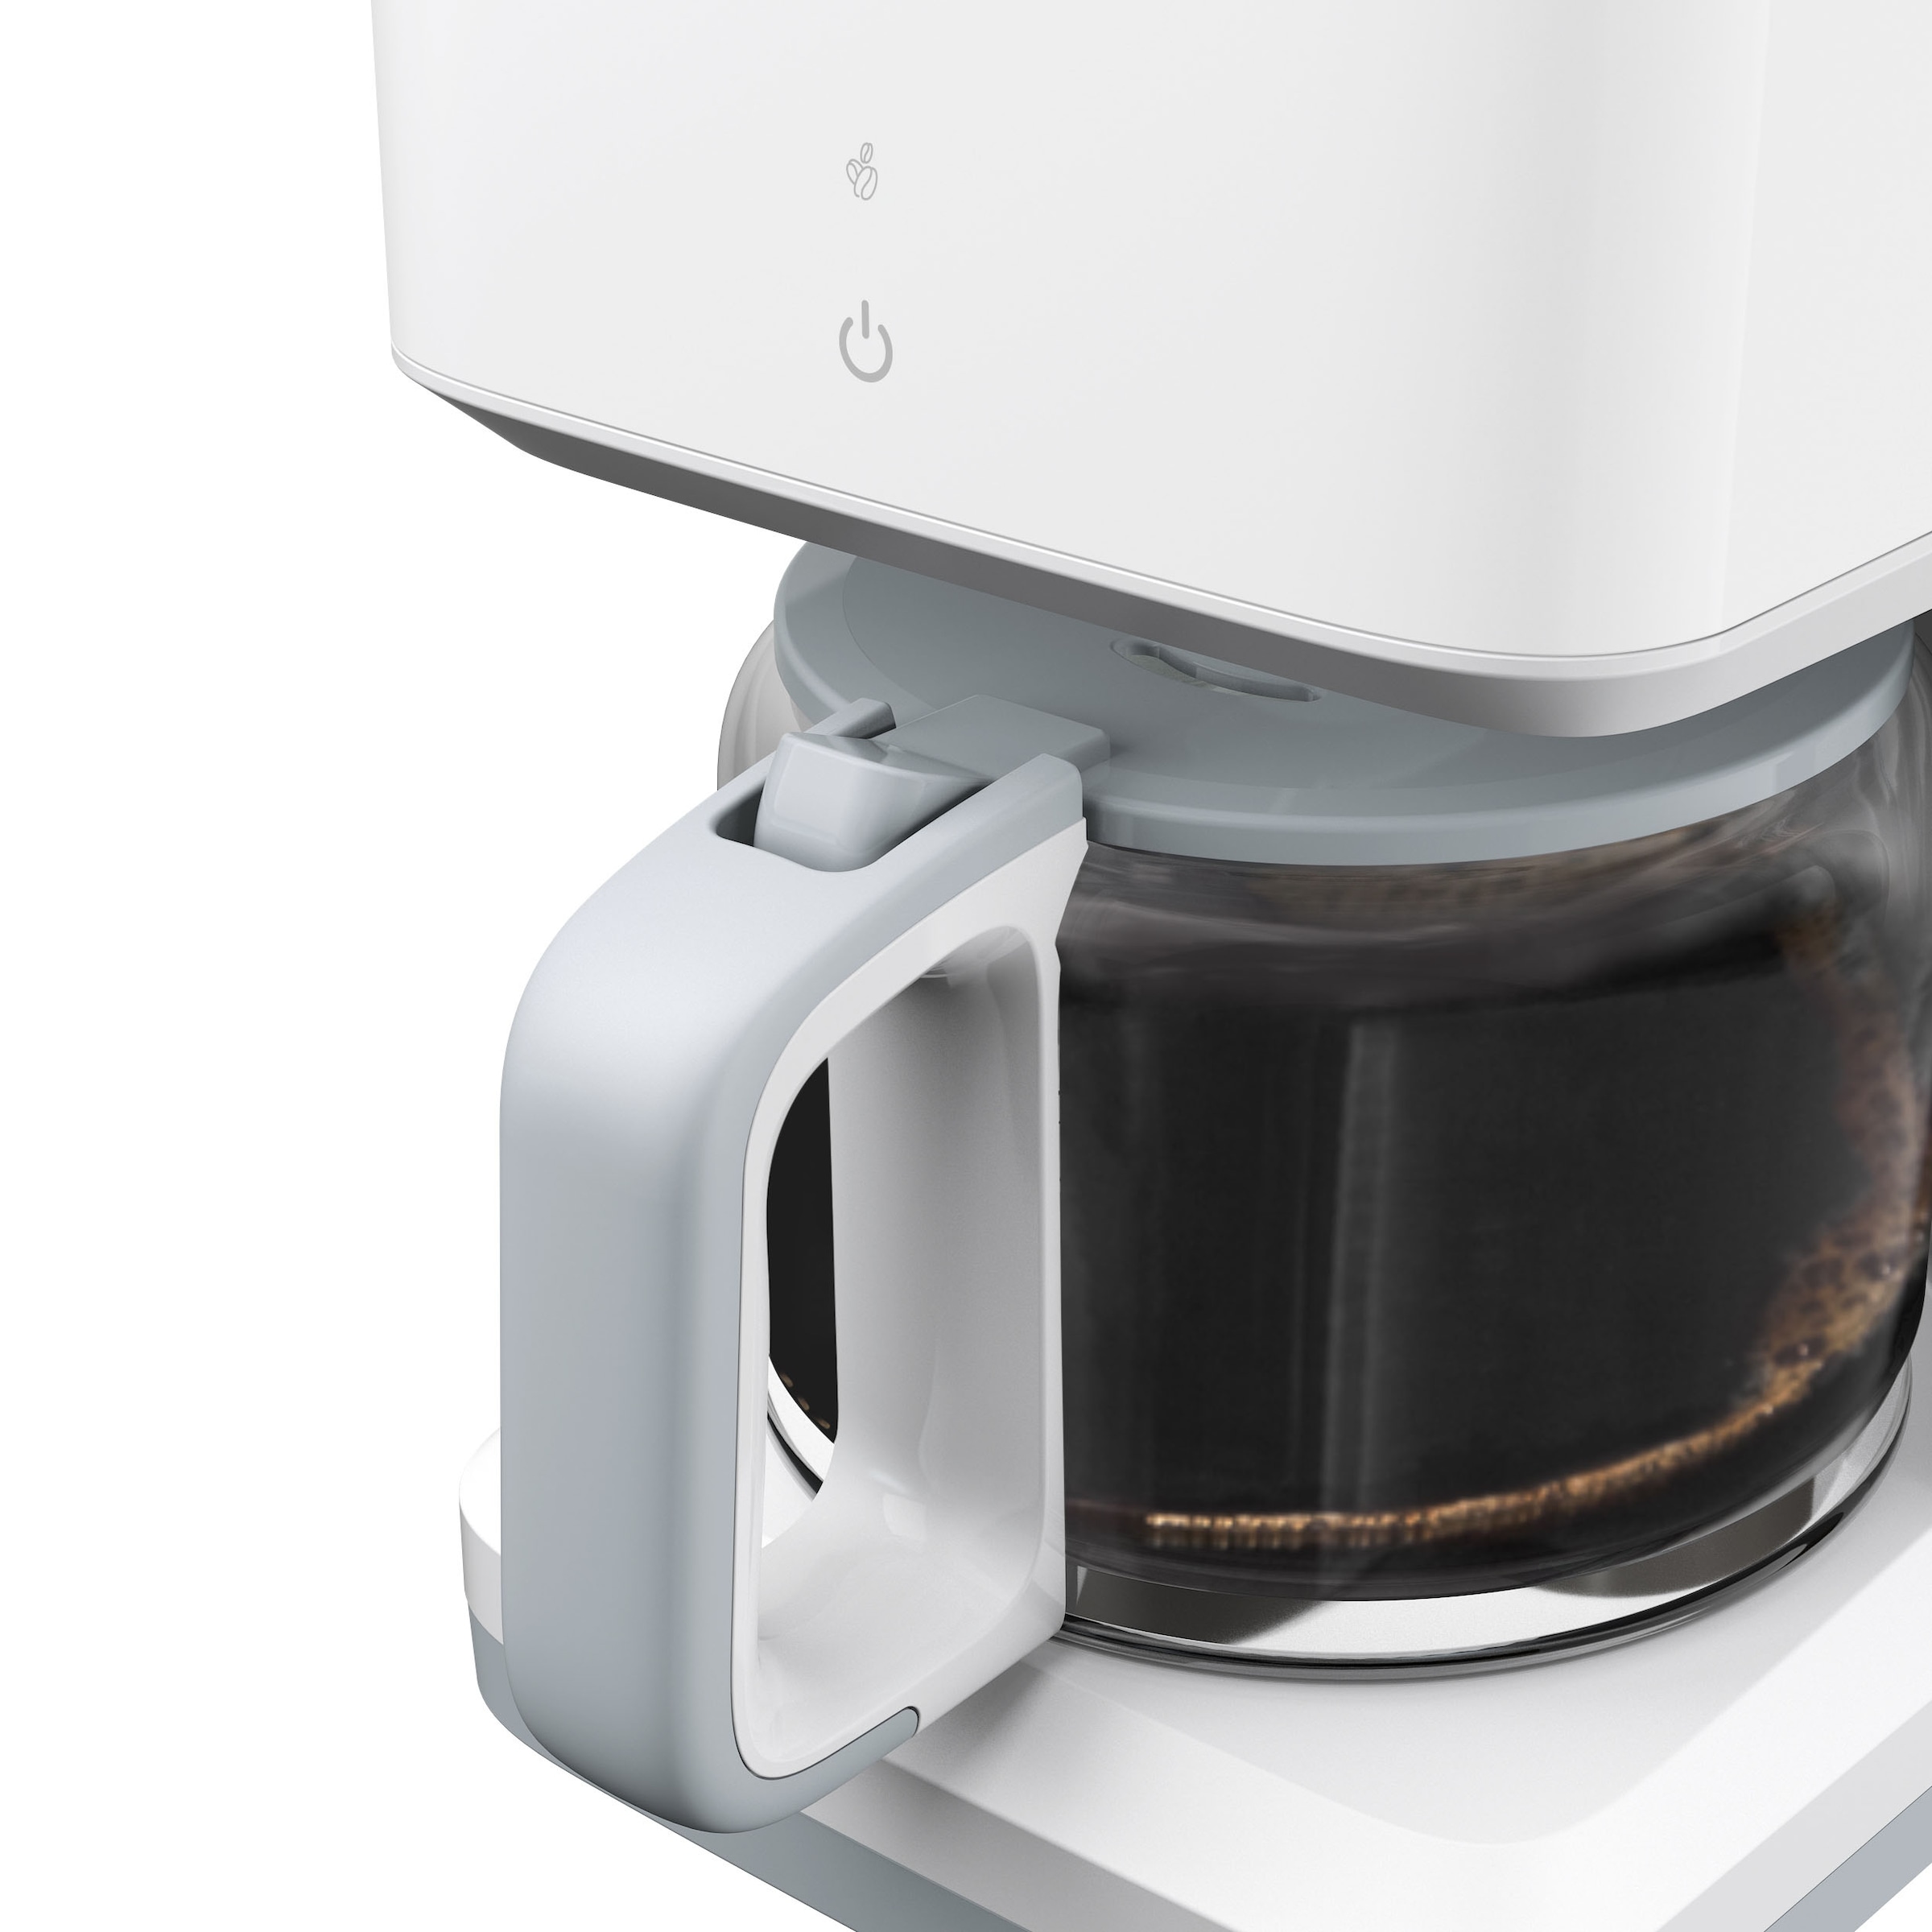 Tefal Filterkaffeemaschine »CM6931 Sense«, 1,25 l Kaffeekanne, Digital-Anzeige, Glaskanne mit Deckel, Kapazität für 10 - 15 Tassen